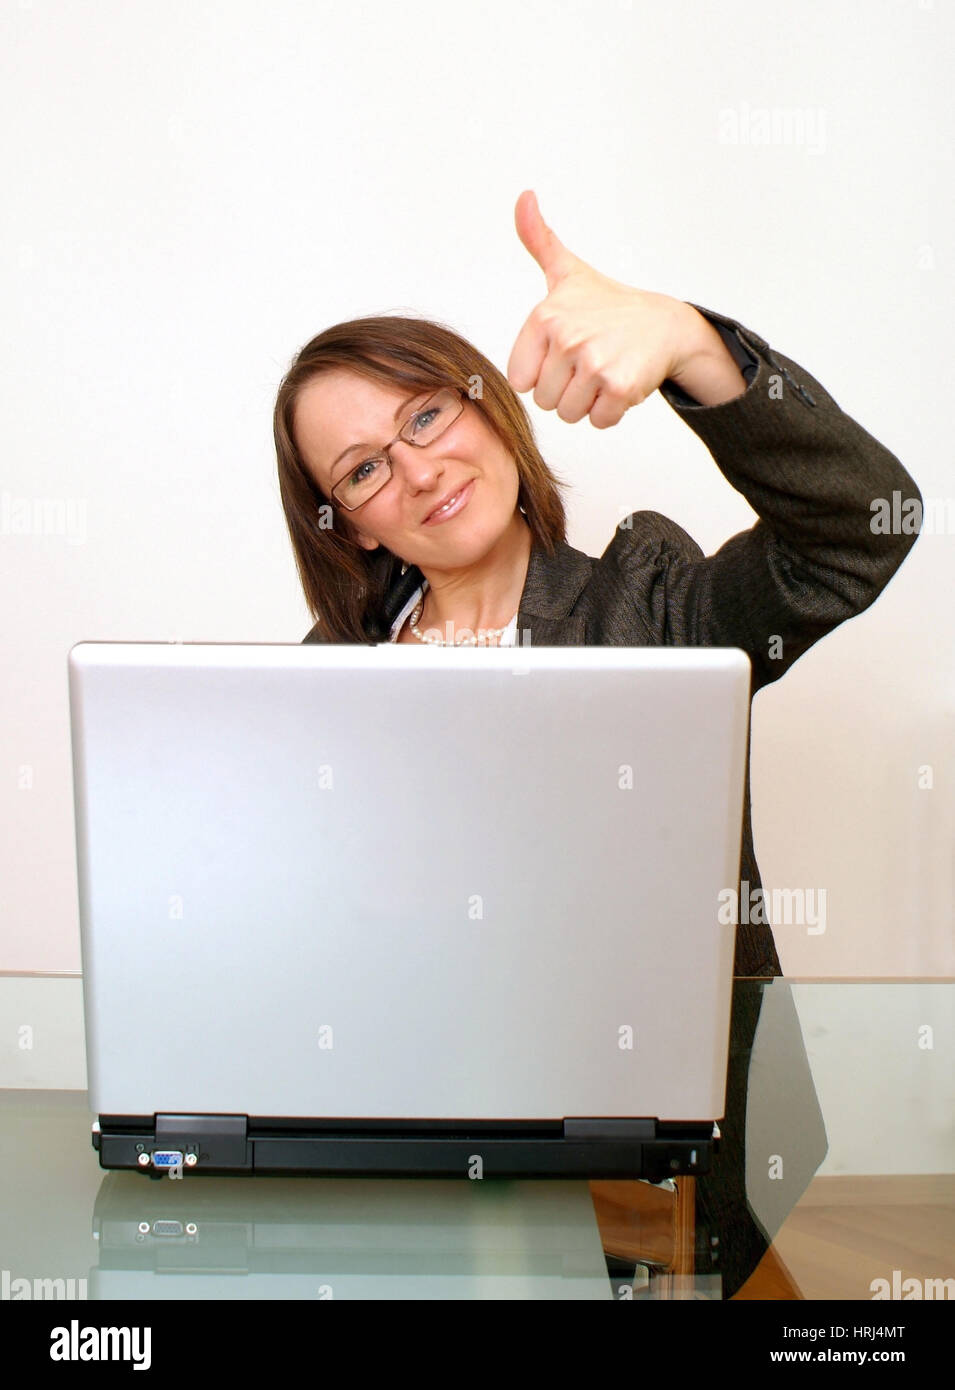 Erfolgreiche Gesch?ftsfrau mit Laptop - mujer de negocios exitosa con laptop, Symbolfotos Foto de stock